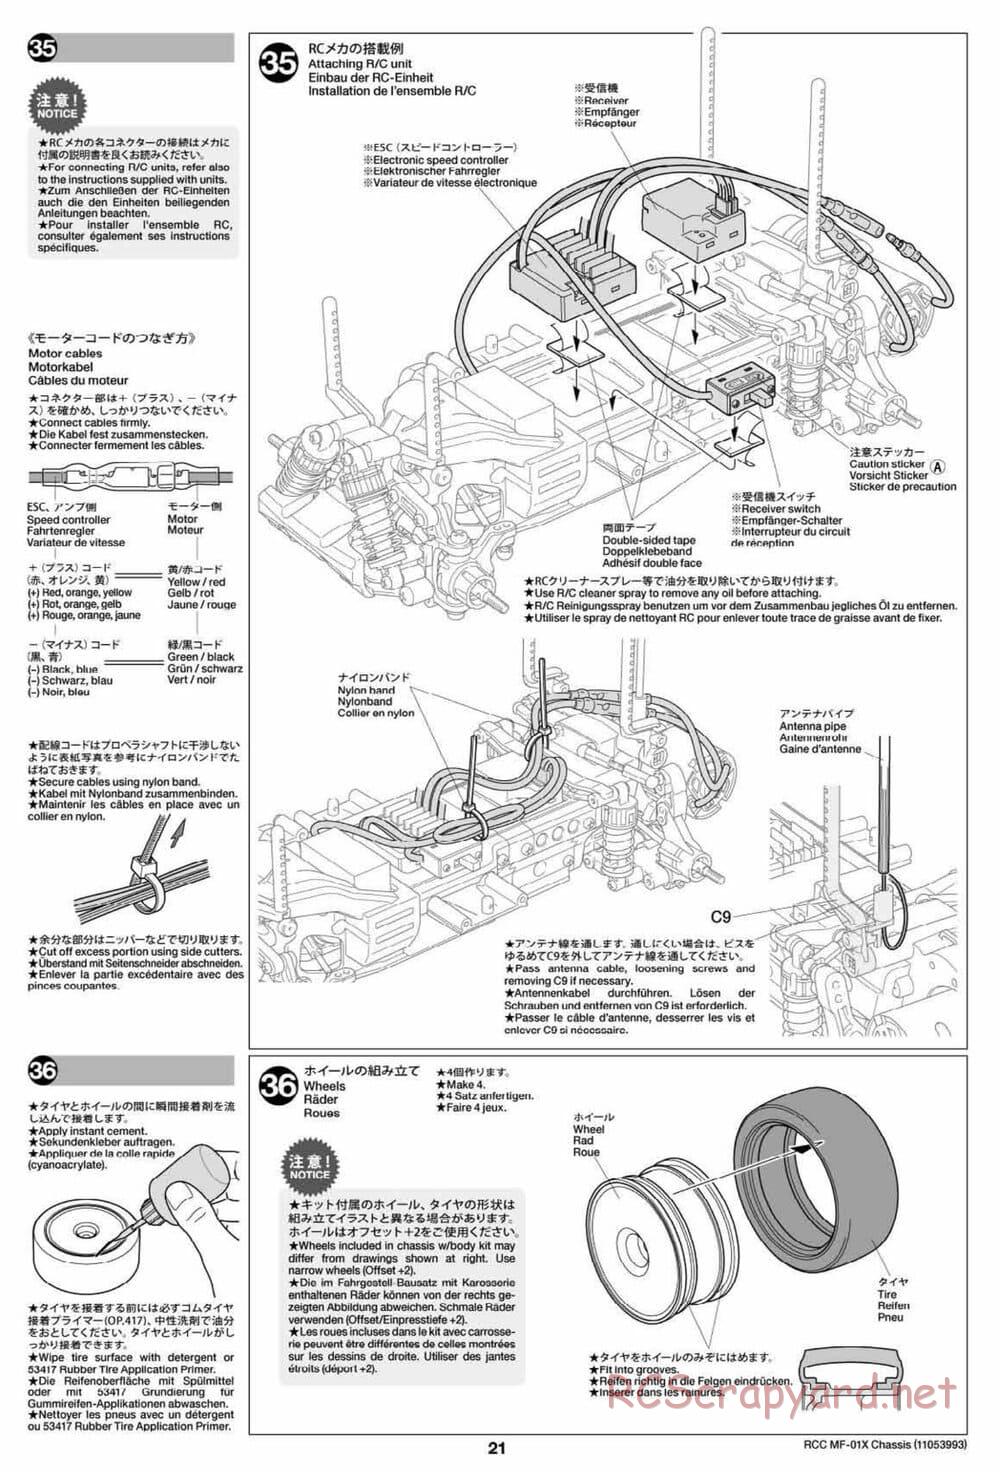 Tamiya - MF-01X Chassis - Manual - Page 21